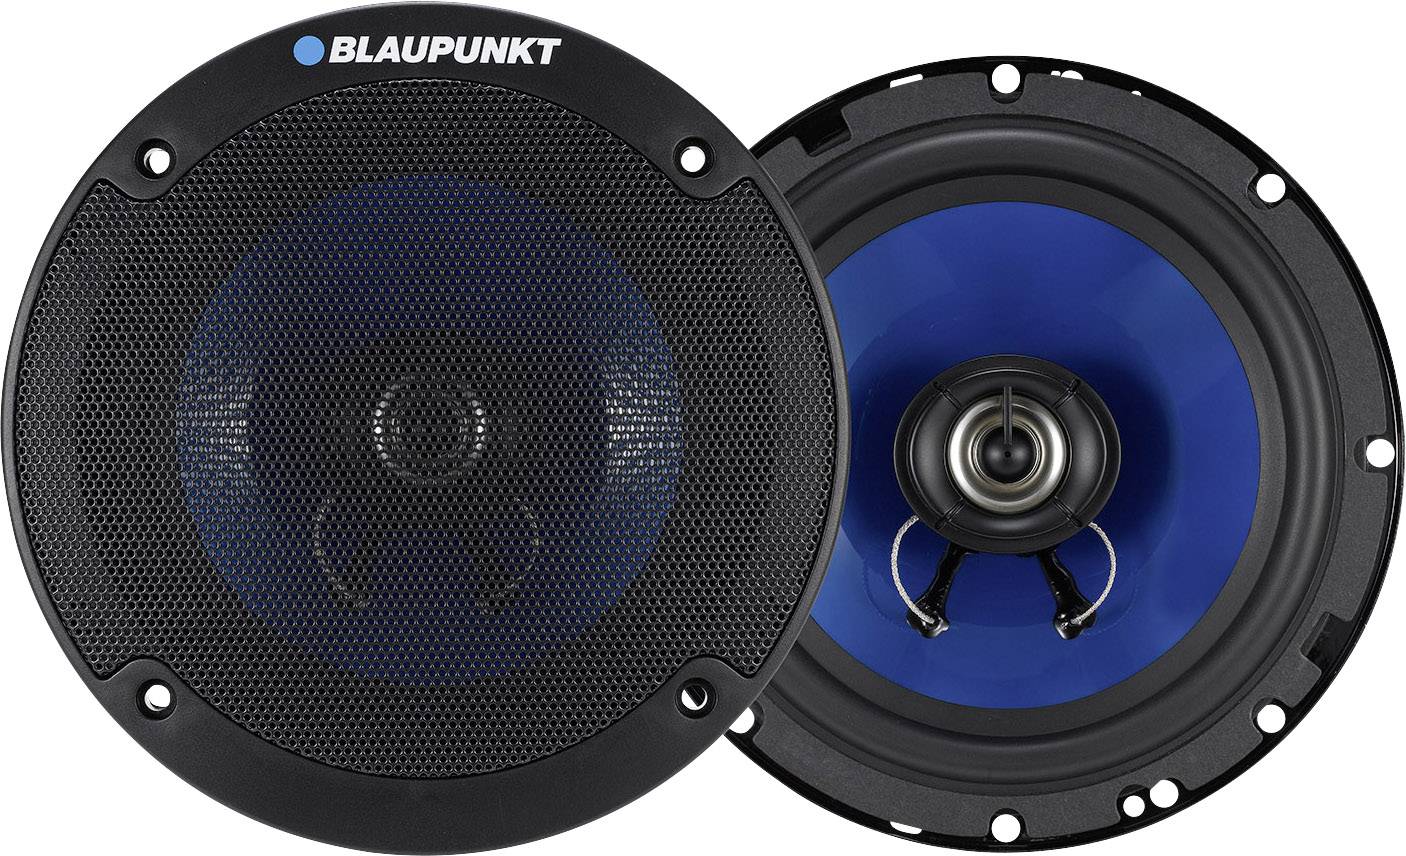 blaupunkt speaker review